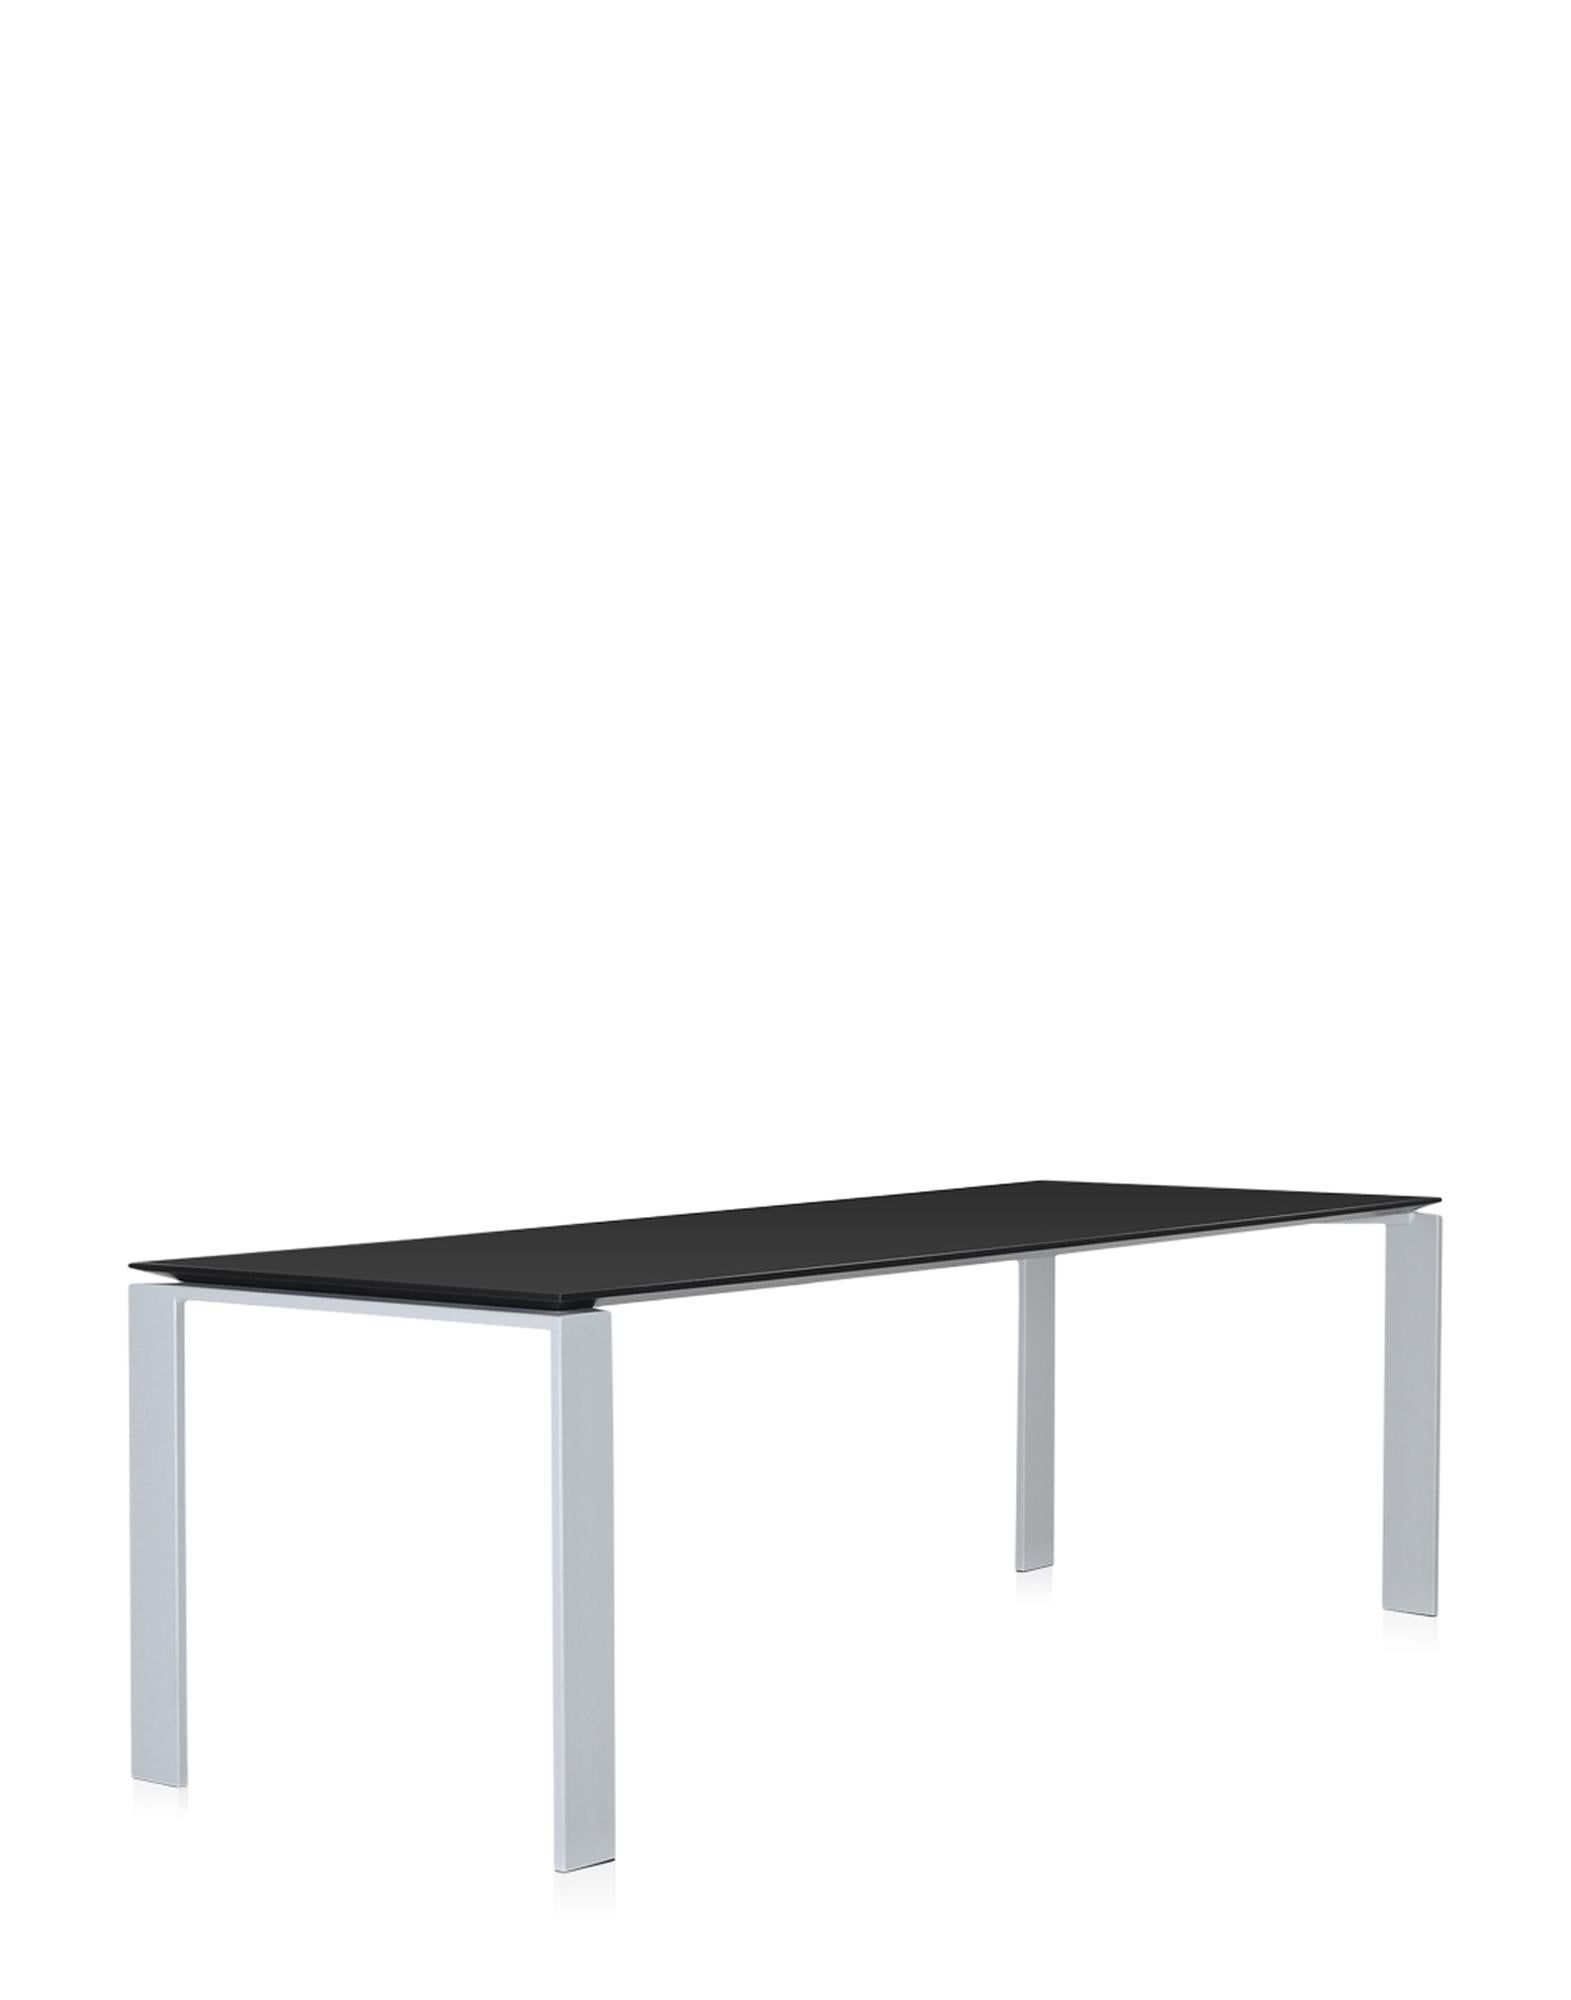 Dieser funktionelle und raffinierte Tisch hat ebenfalls ein streng geometrisches Design. Dank der eleganten Designlösung ermöglicht die Position der schlanken Tischplatte die bequeme Positionierung von Schubladen oder Aufbewahrungsmöbeln für